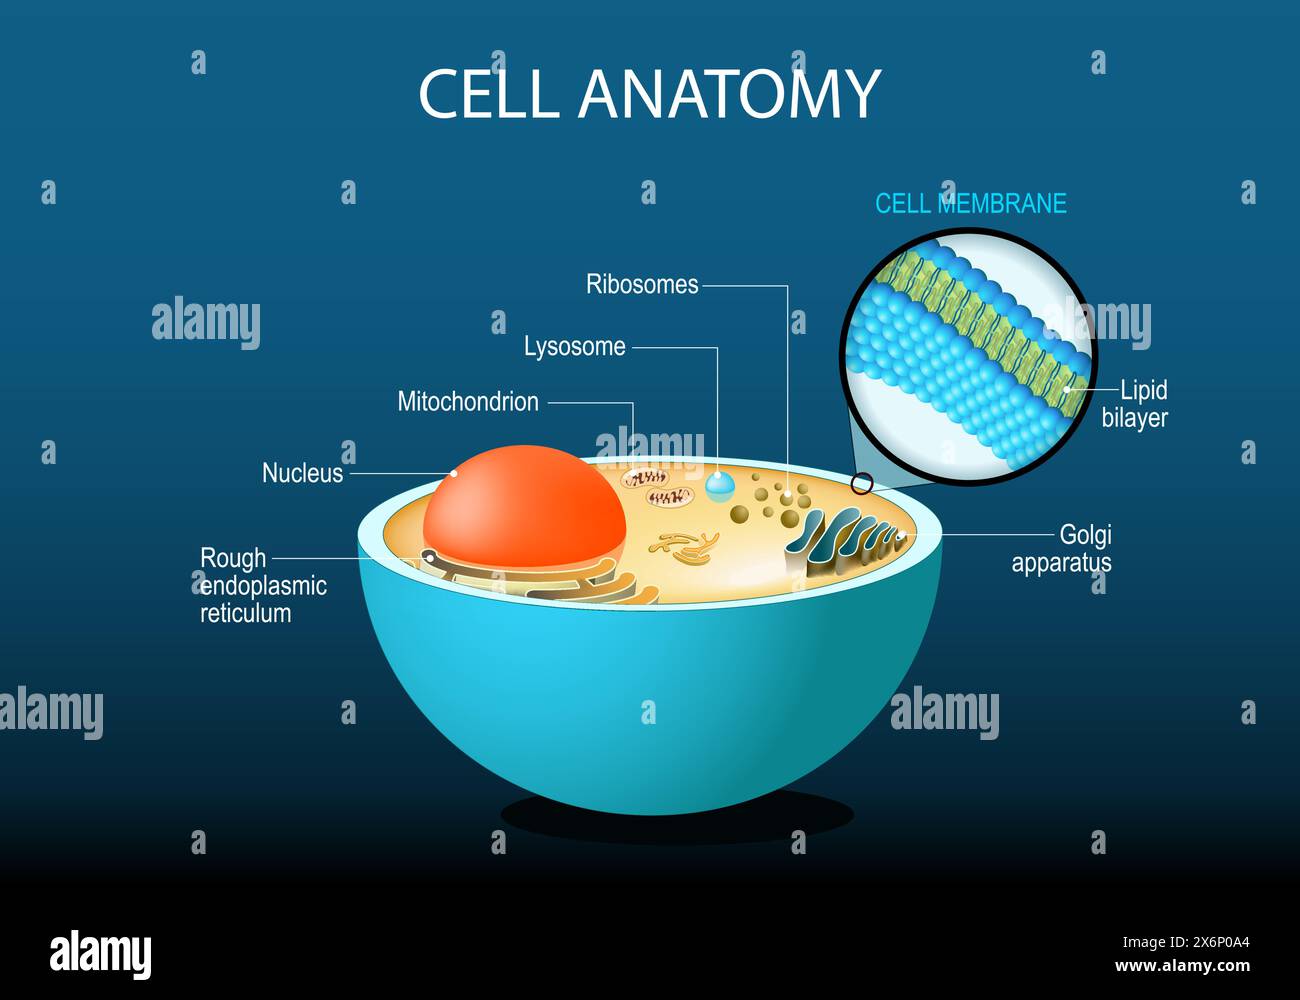 Anatomie cellulaire. Structure cellulaire et organites noyau, ribosomes, réticulum endoplasmique, appareil de Golgi, mitochondrie, cytoplasme, lysosome. Gros plan o Illustration de Vecteur